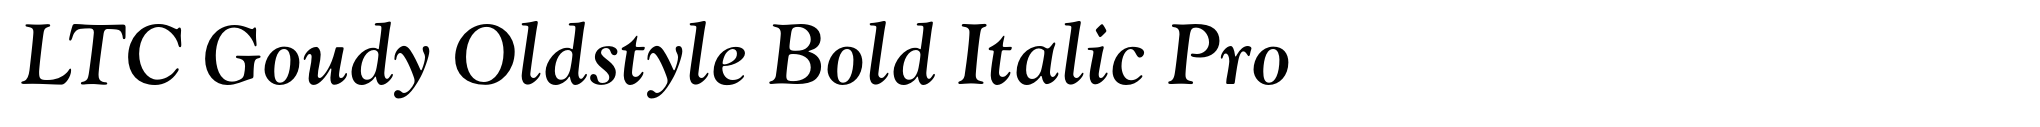 LTC Goudy Oldstyle Bold Italic Pro image